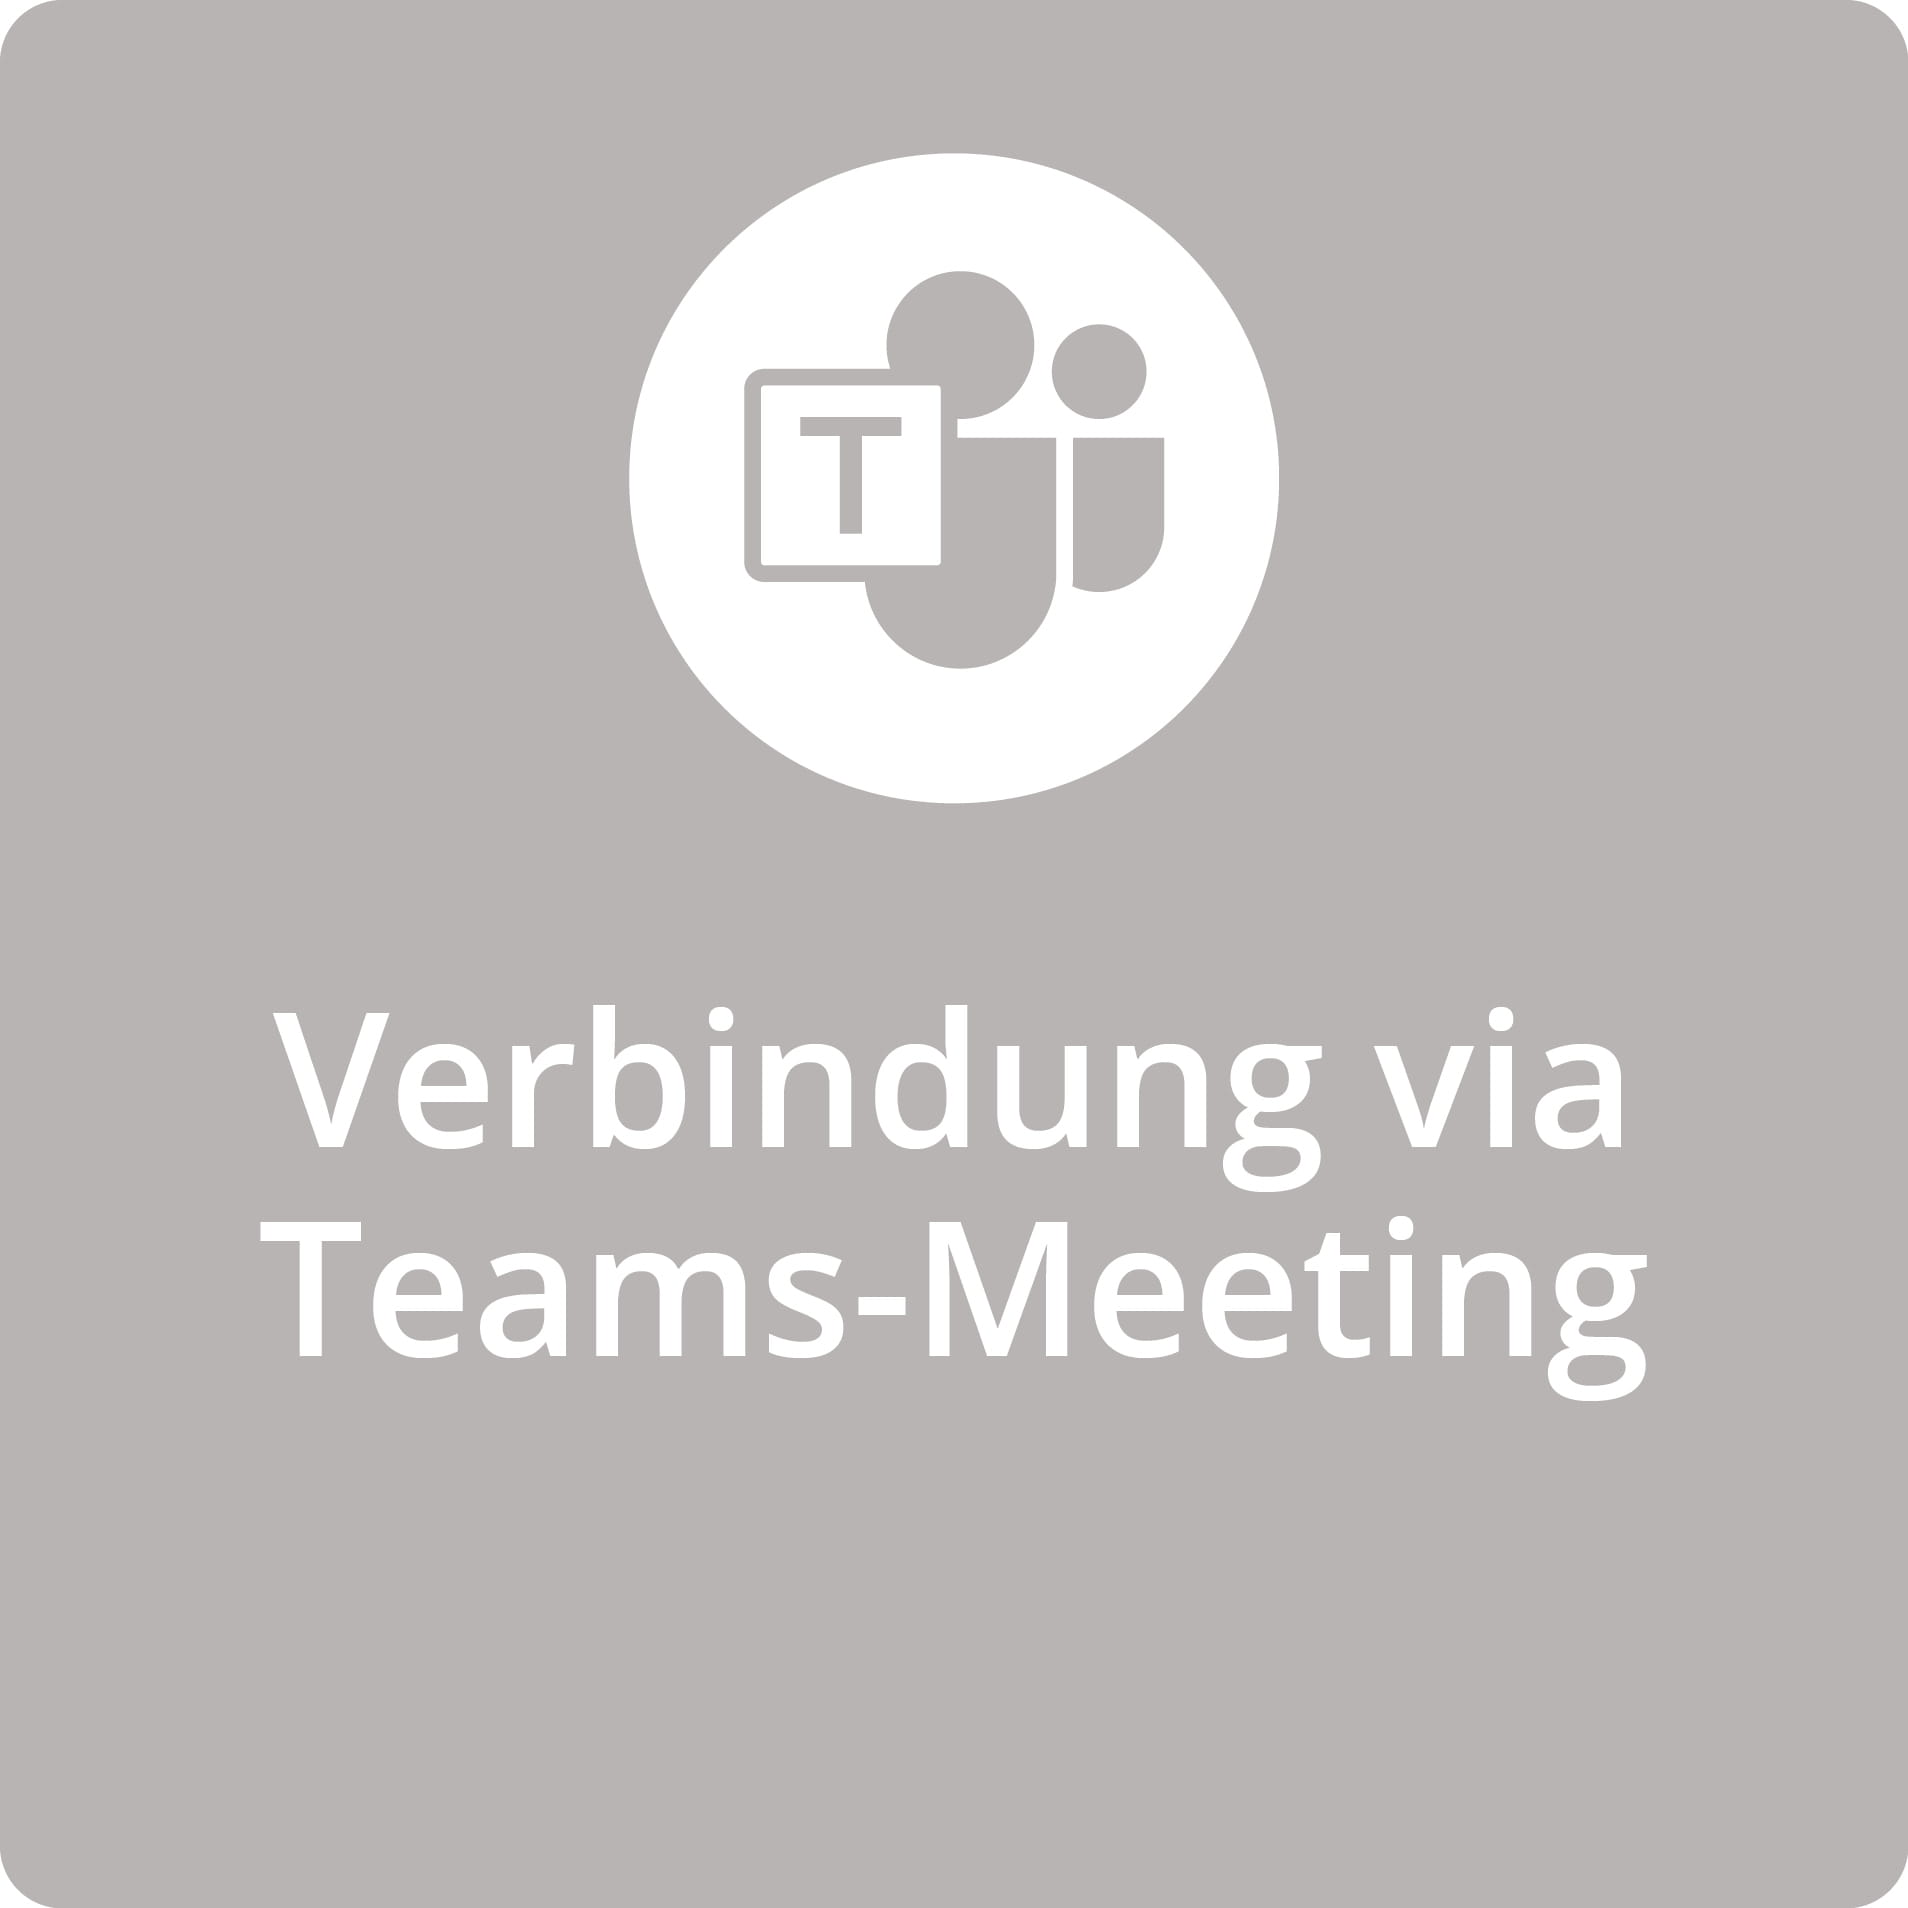 OPS Teams-Meeting